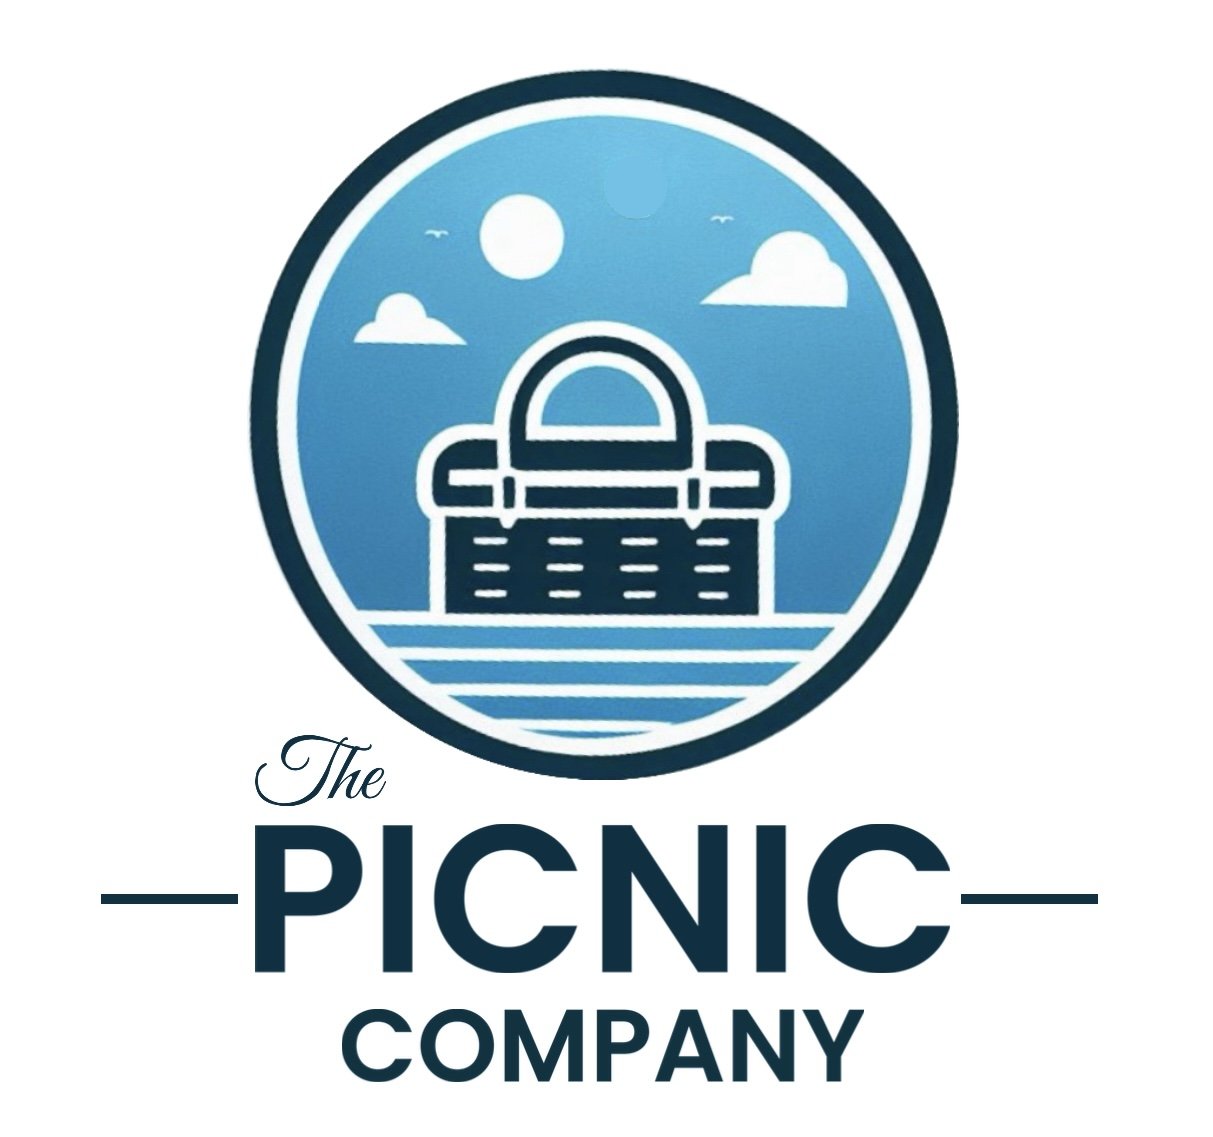 The Picnic Company